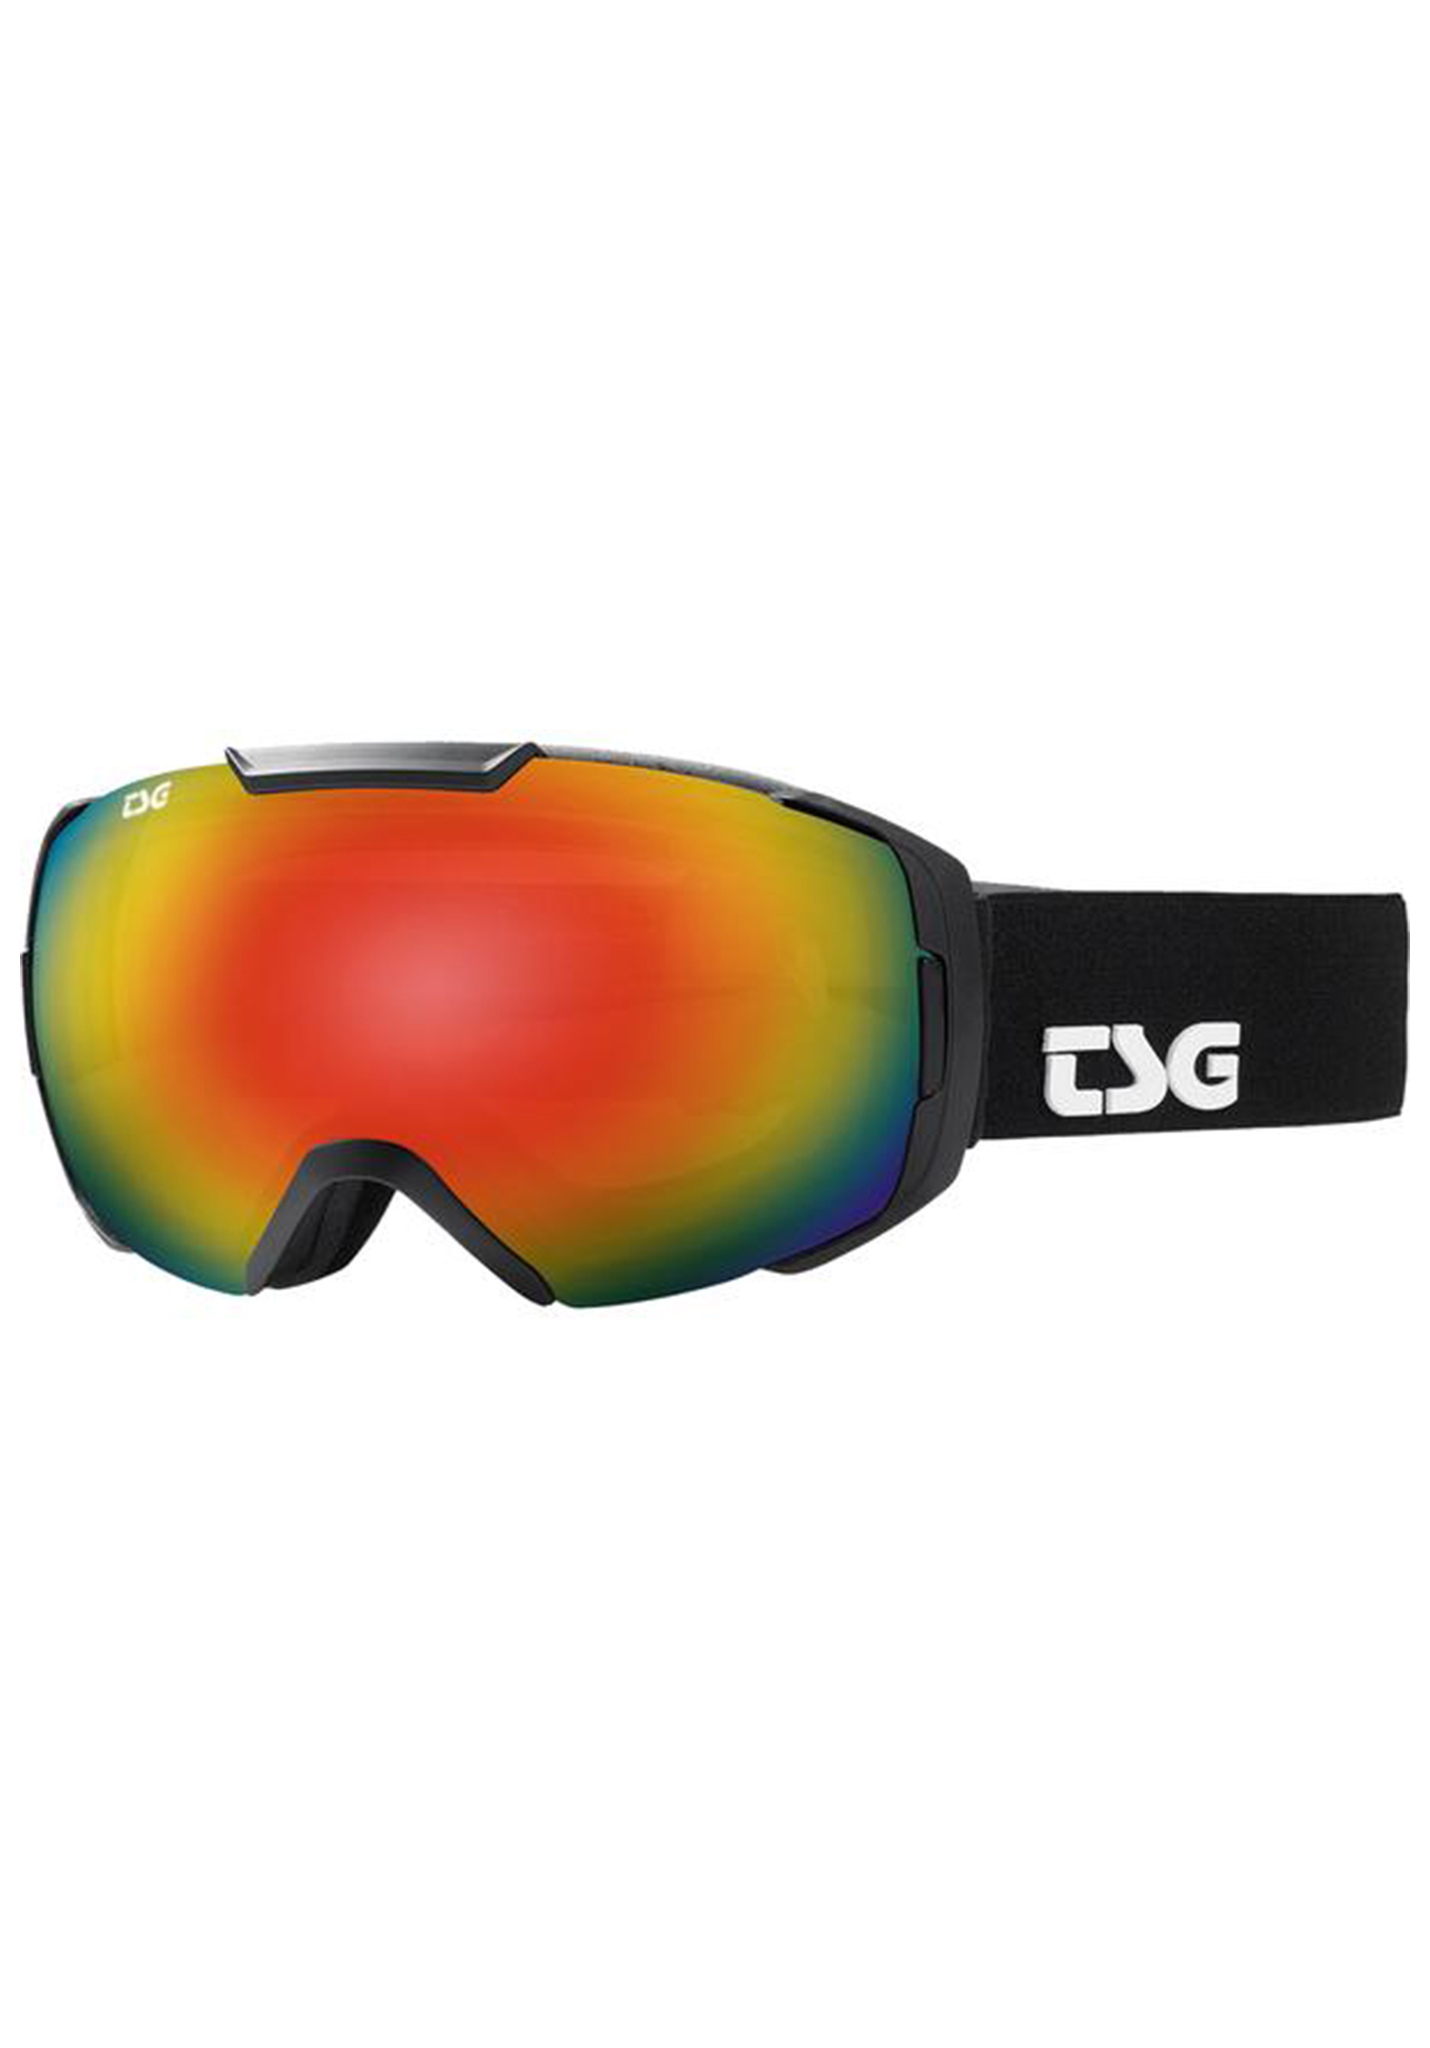 TSG One Snowboardbrillen schwarz/regenbogen chrom One Size